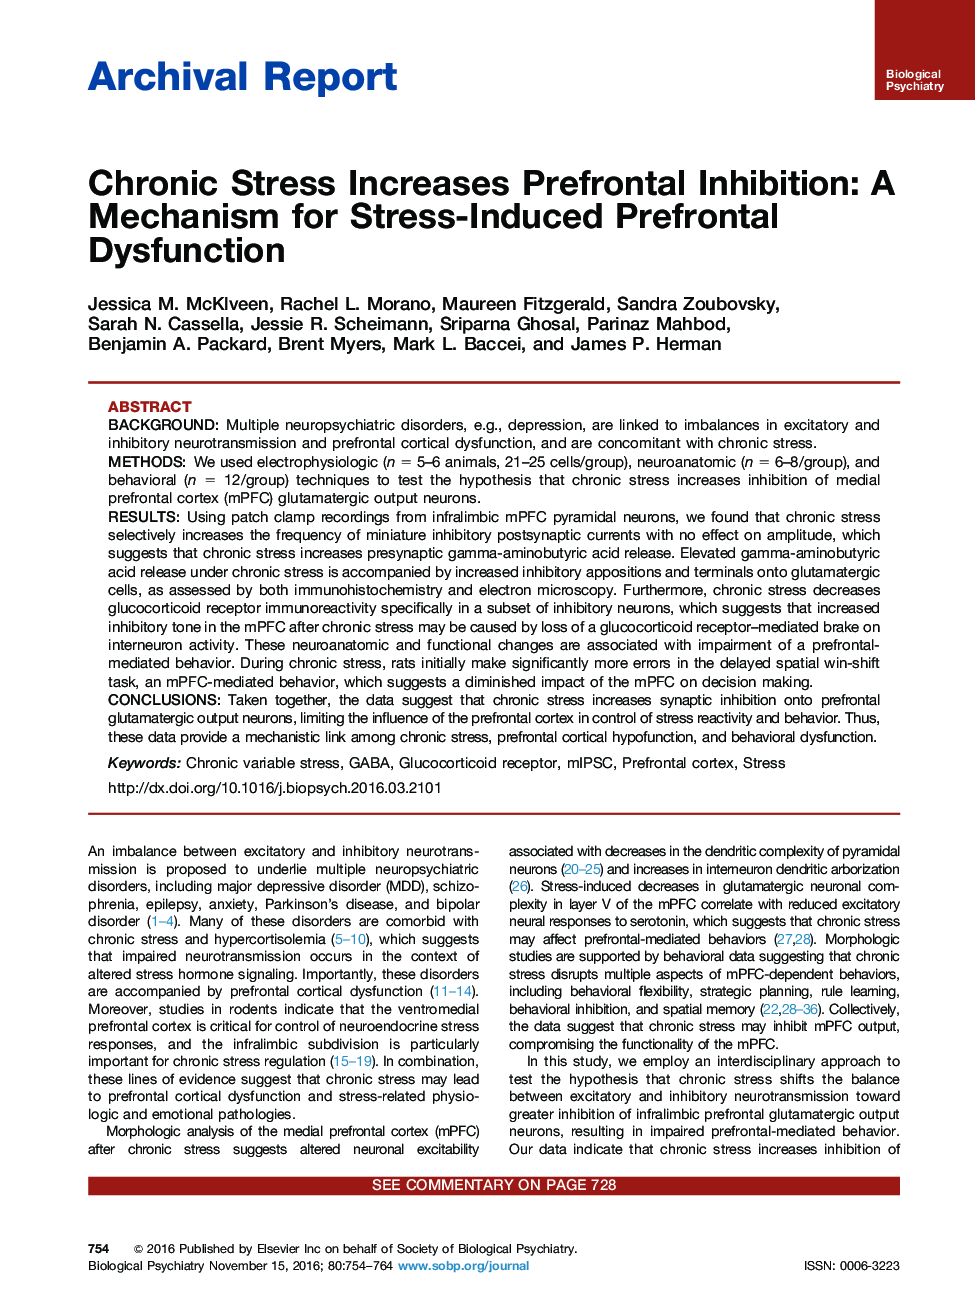 فشارخون گزارش آرامبخشی فشارخون پیش از موعد را افزایش می دهد: مکانیسم اختلال پیش مغلوب ناشی از استرس 